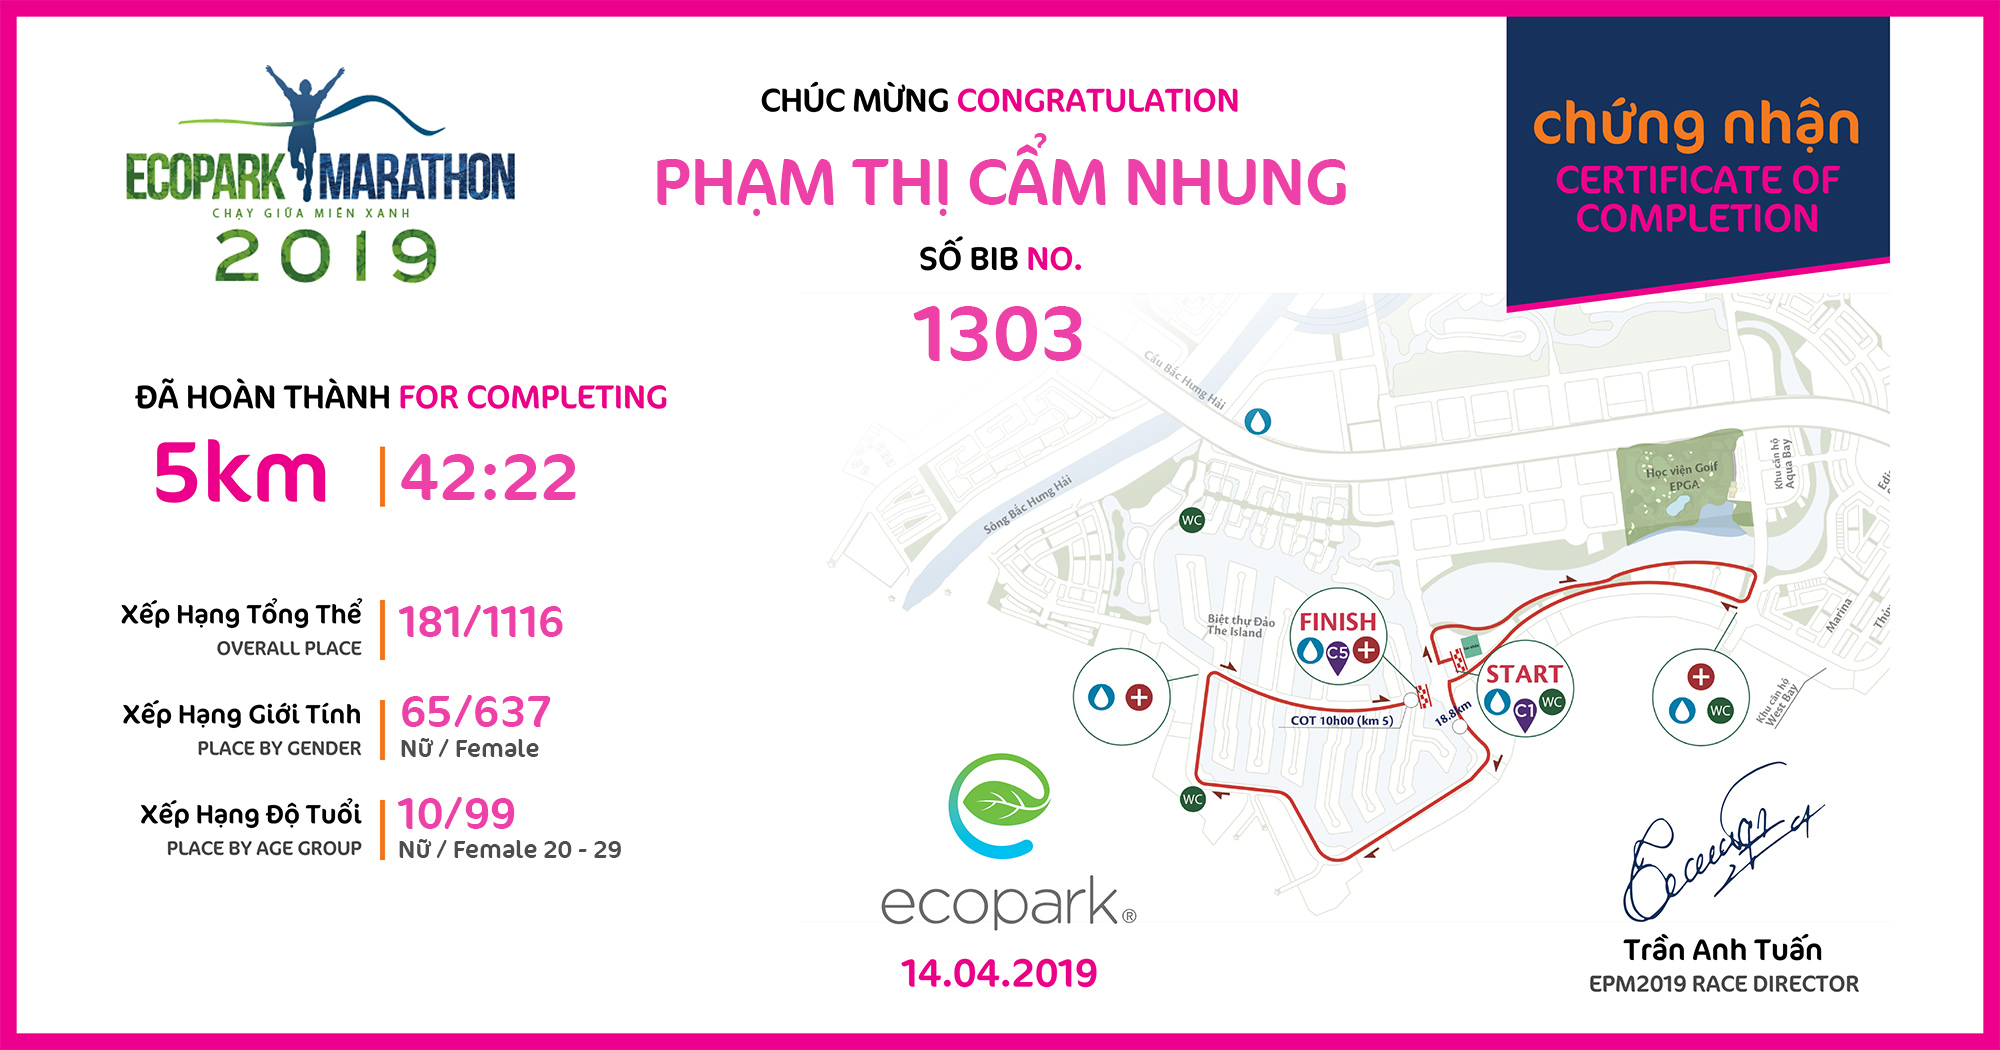 1303 - Phạm Thị Cẩm Nhung